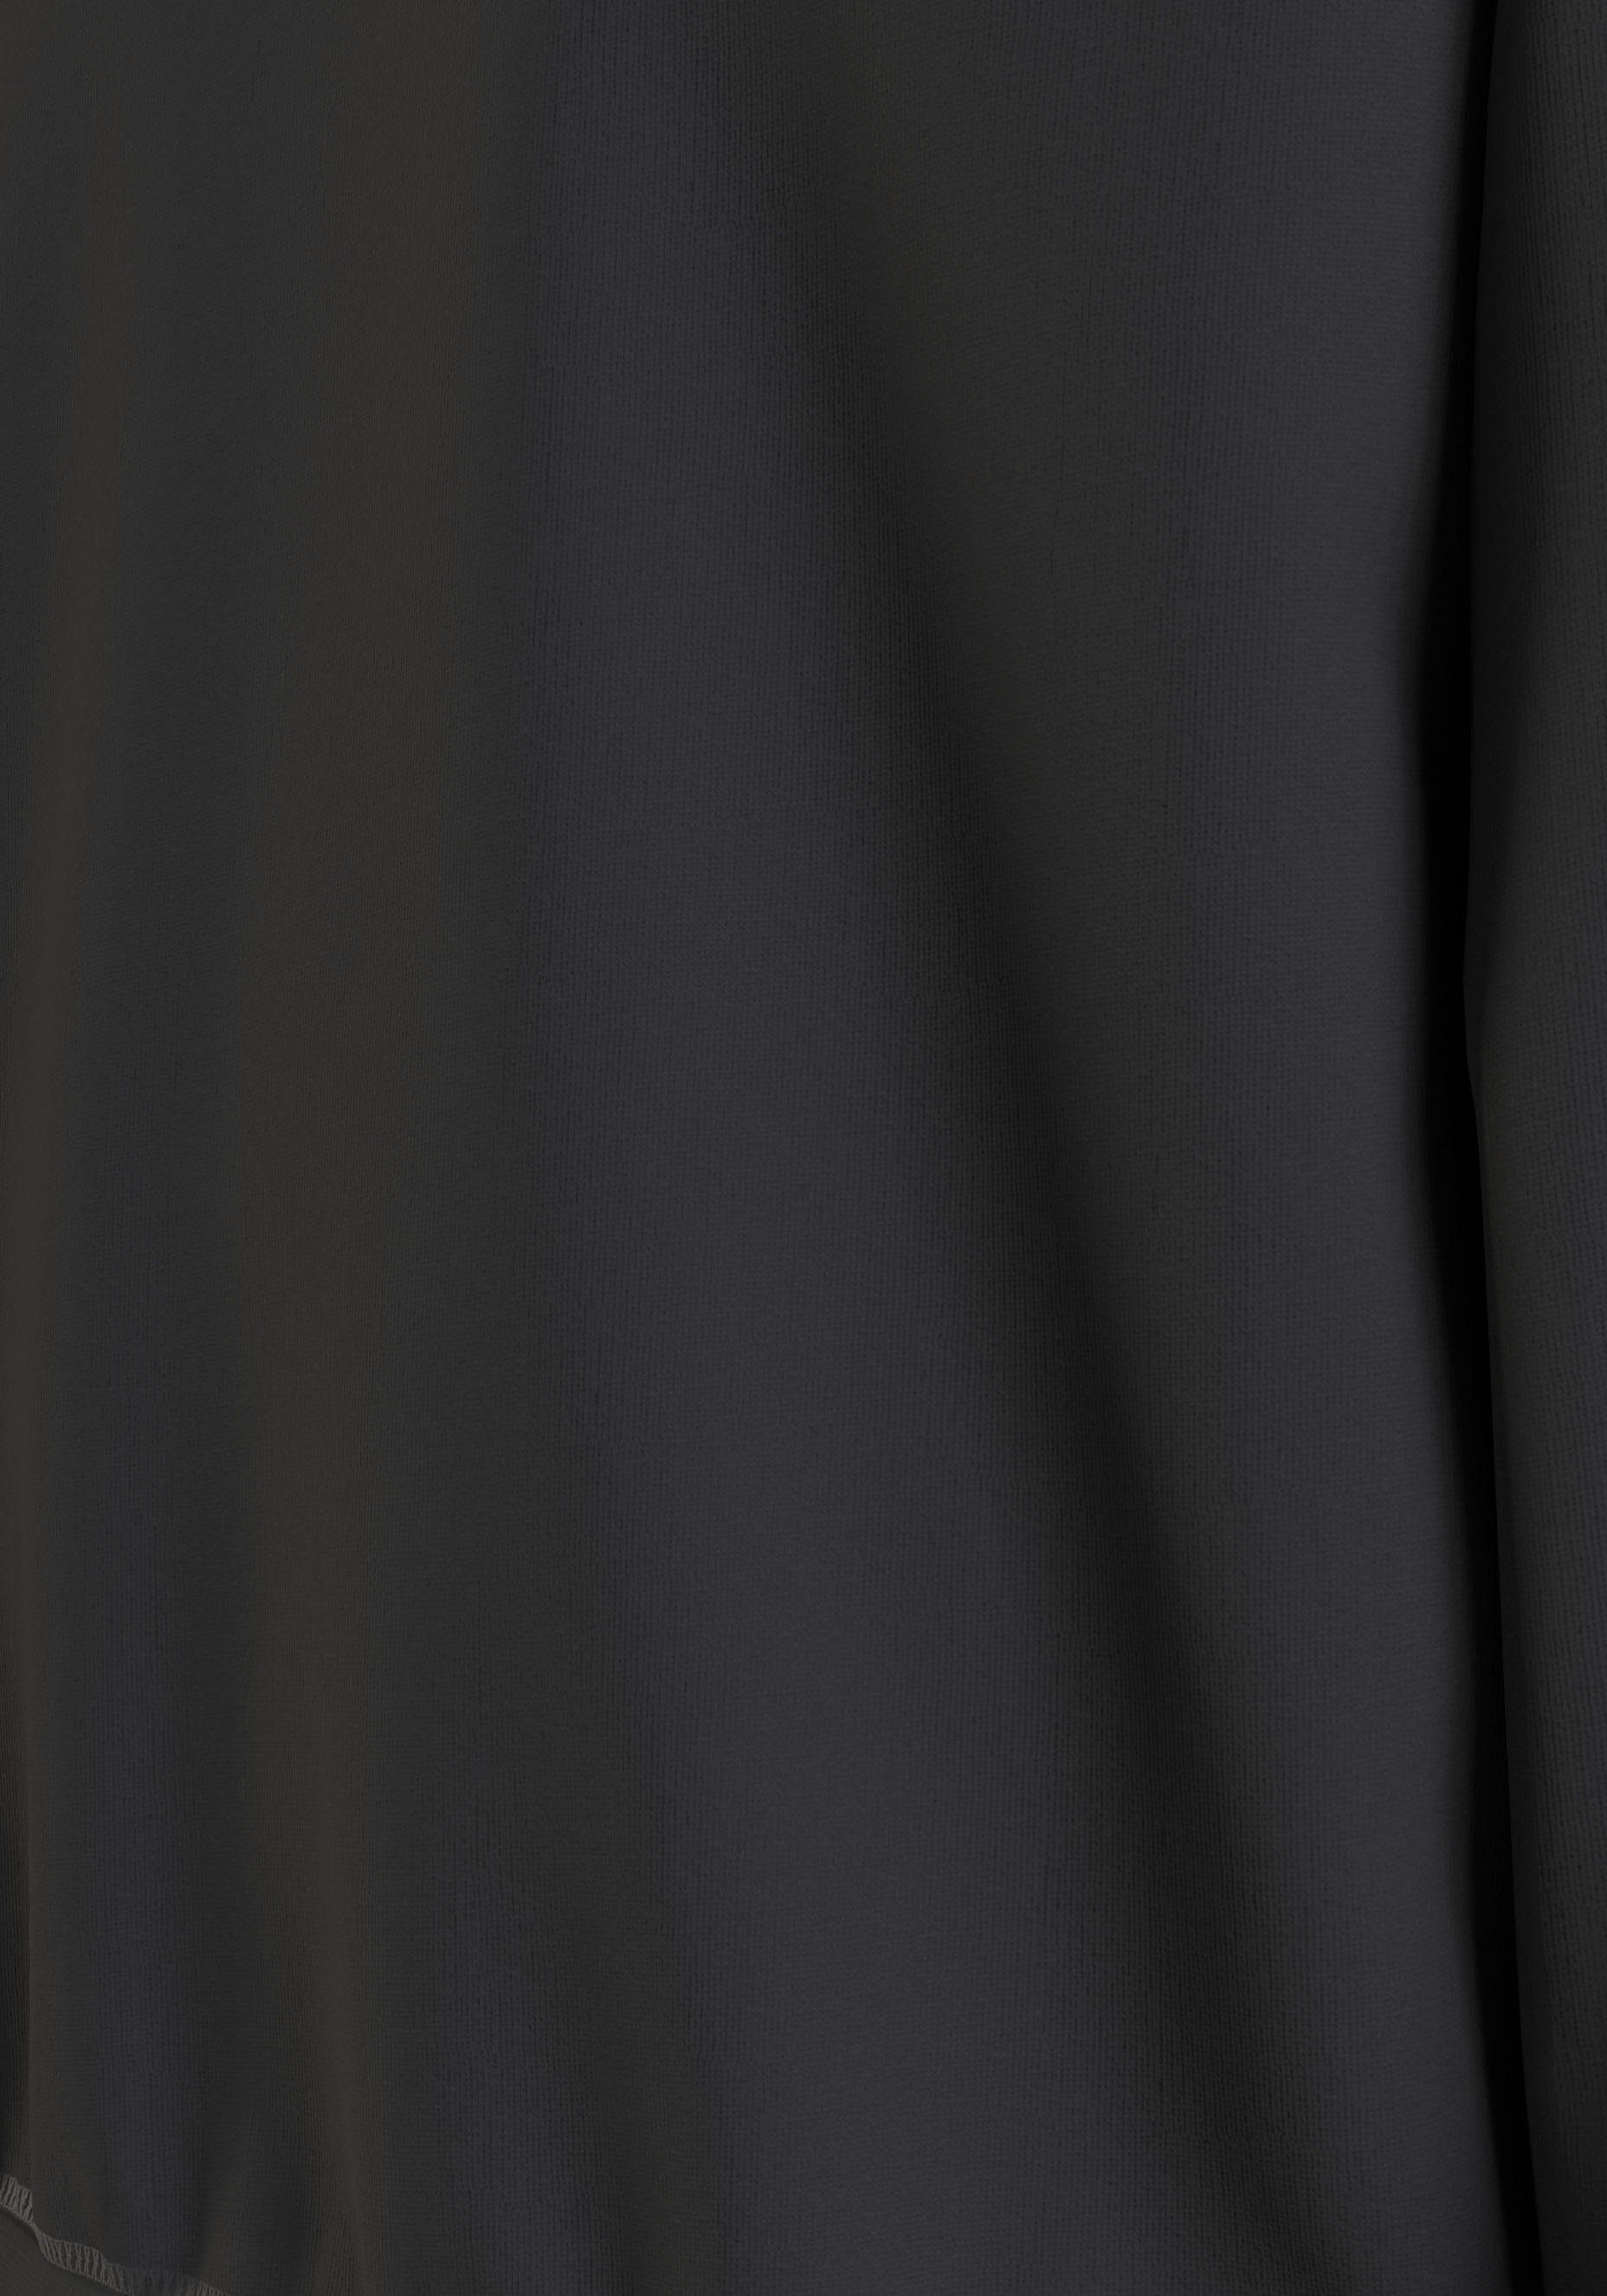 ARCHED Black Sweatshirt CREWNECK Tommy HILFIGER mit Rippbündchen Hilfiger